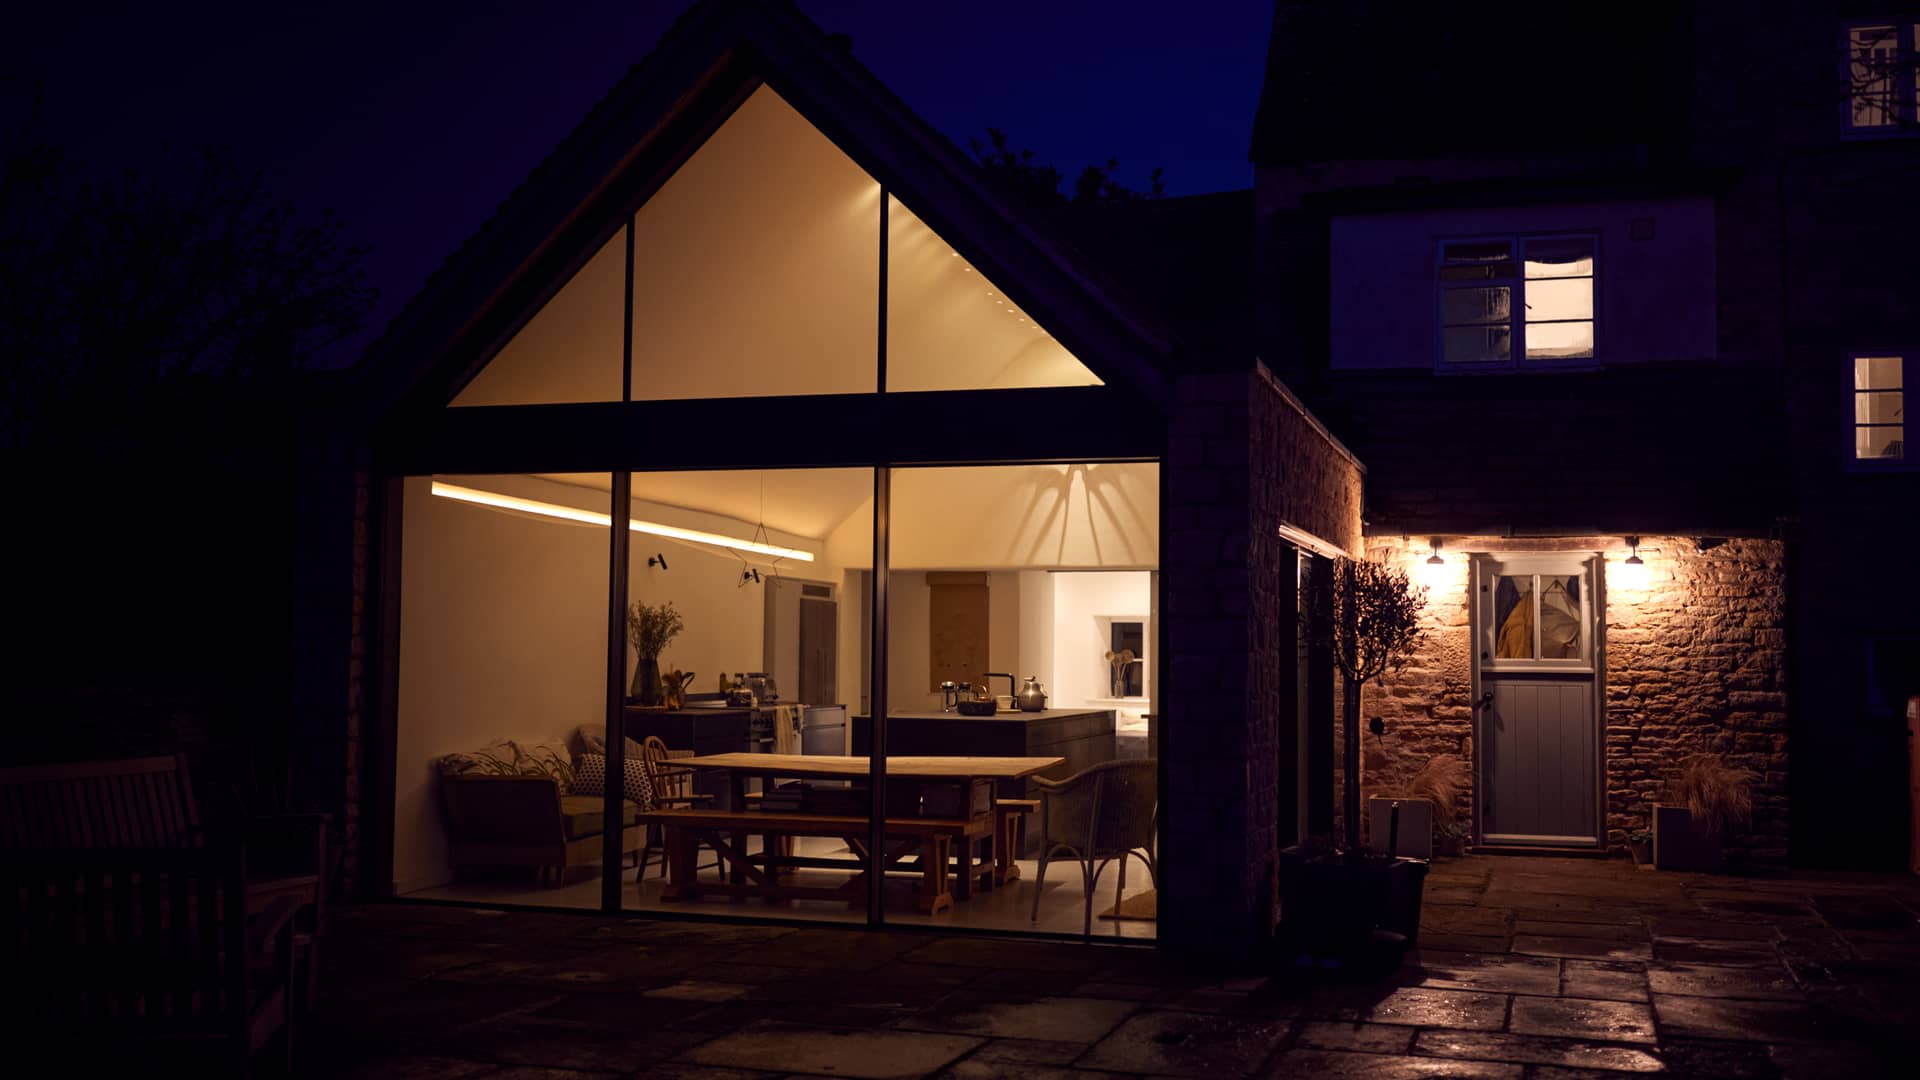 casa con paredes de cristal iluminada por la noche que representa las tarifas por uso de naturgy